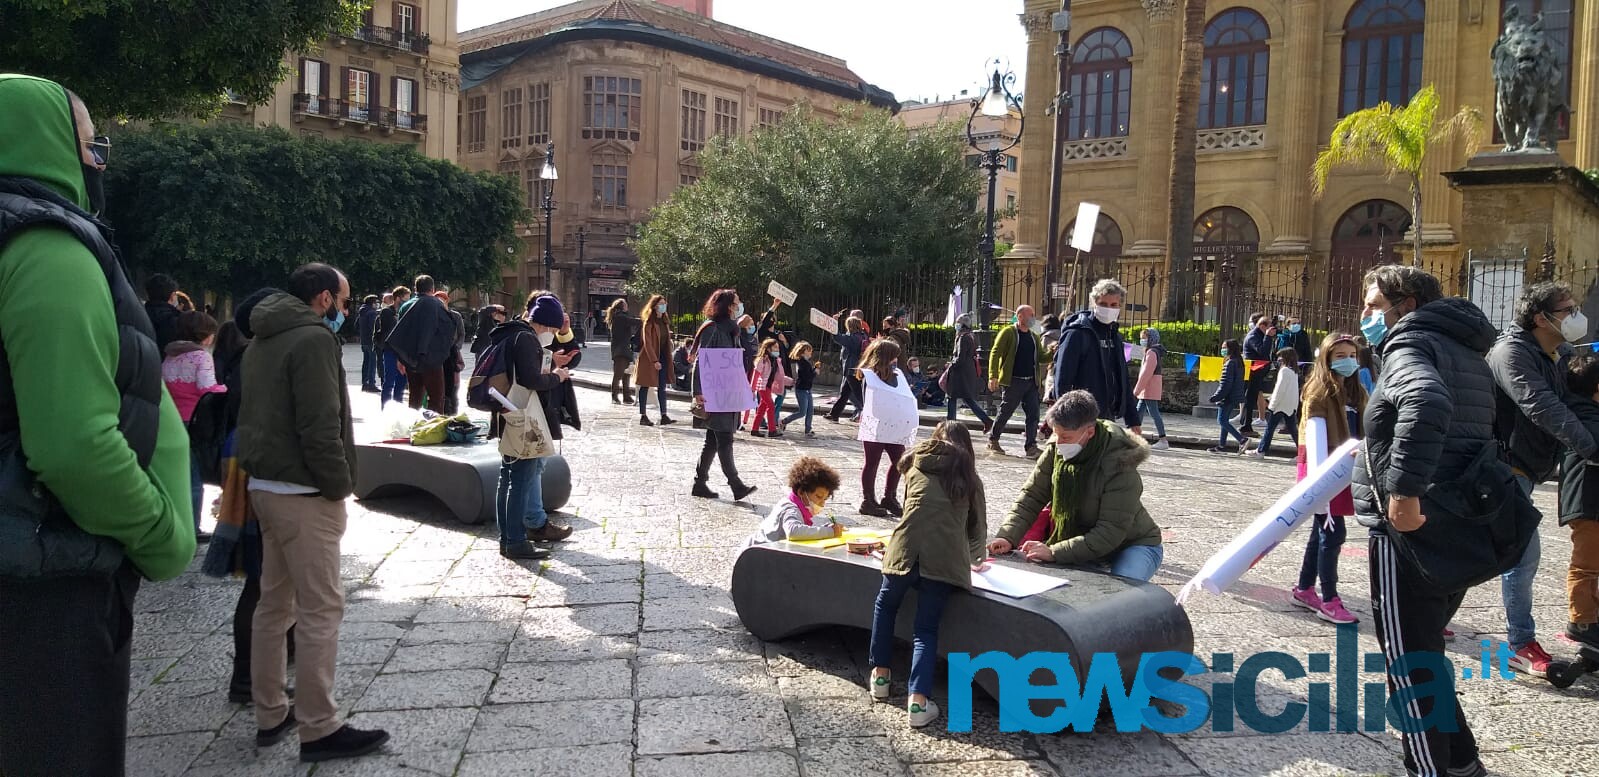 Palermo, alunni e genitori in piazza per chiedere lo stop della DaD: “La scuola è in presenza” – FOTO e VIDEO